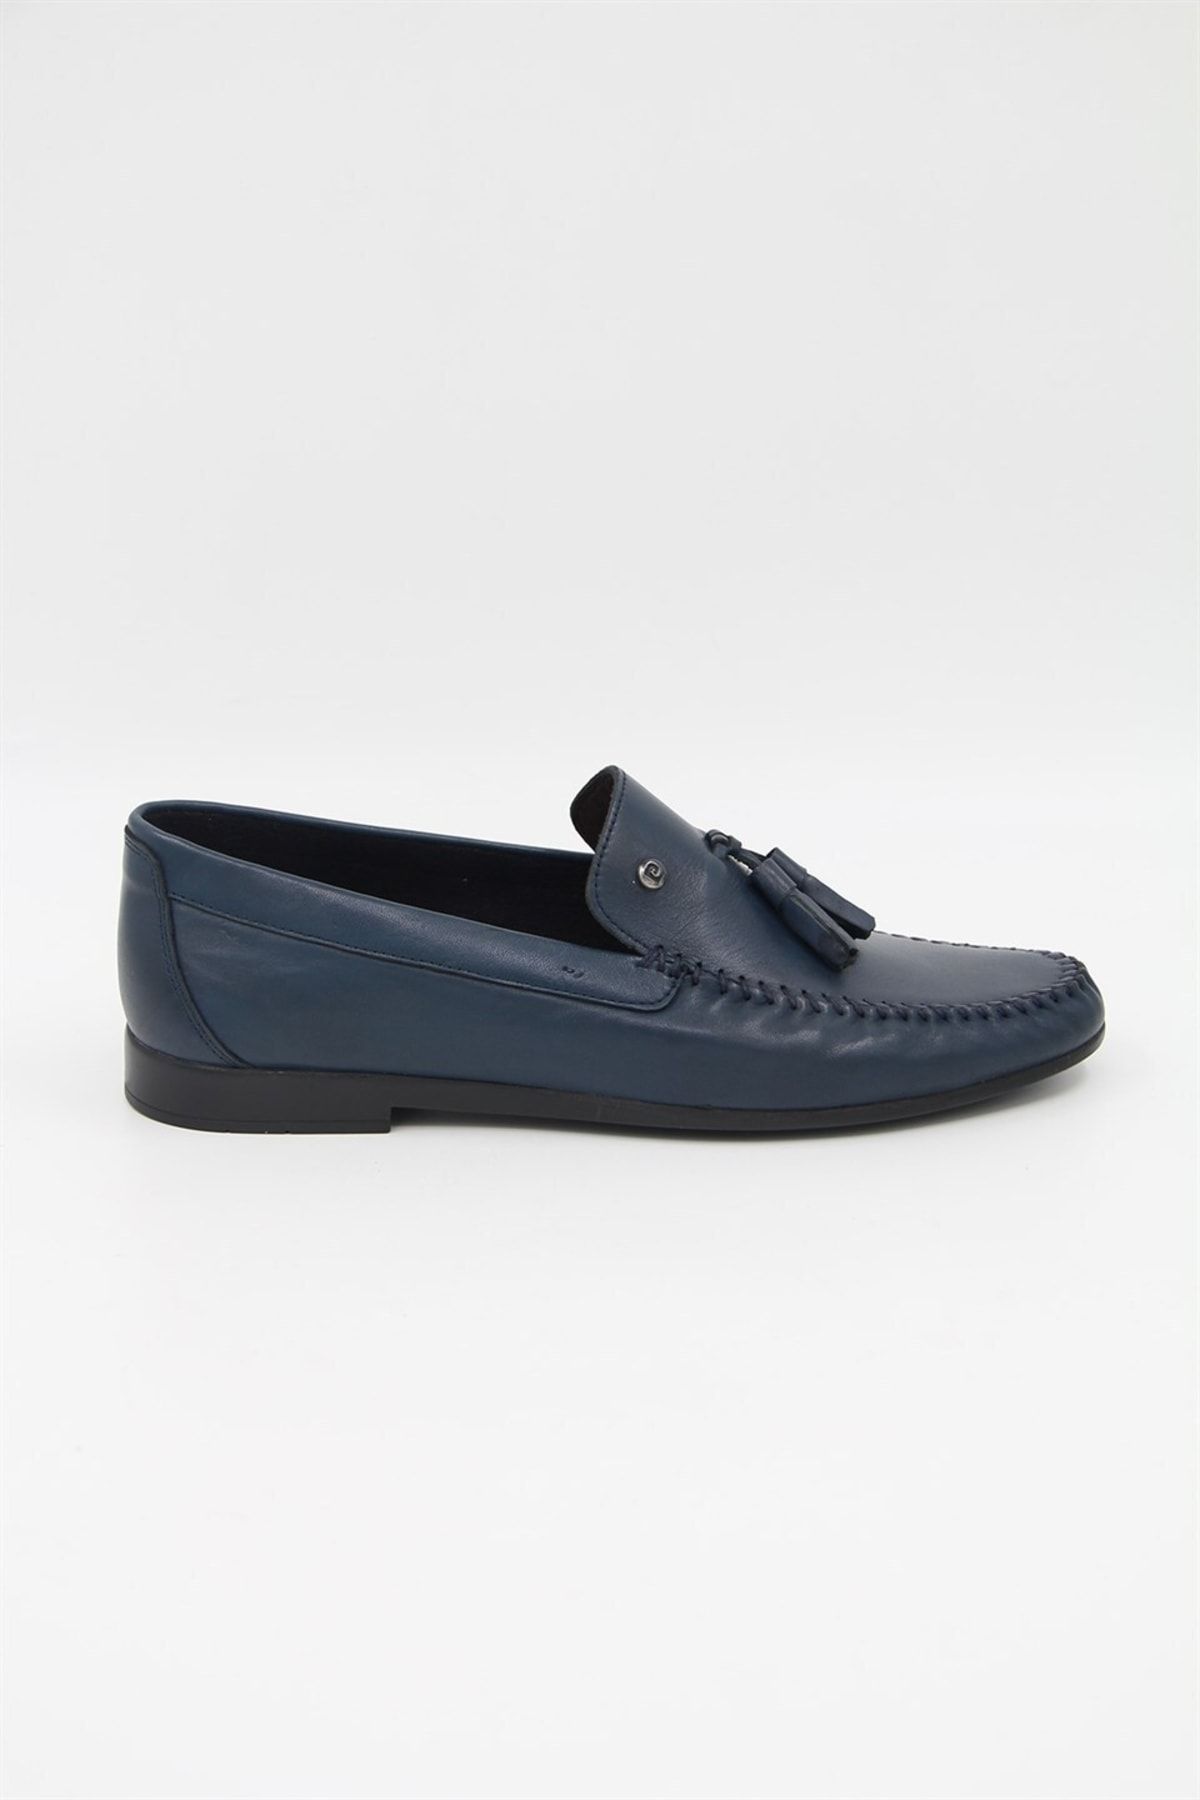 Pierre Cardin 2597 Erkek Klasik Ayakkabı - Lacivert